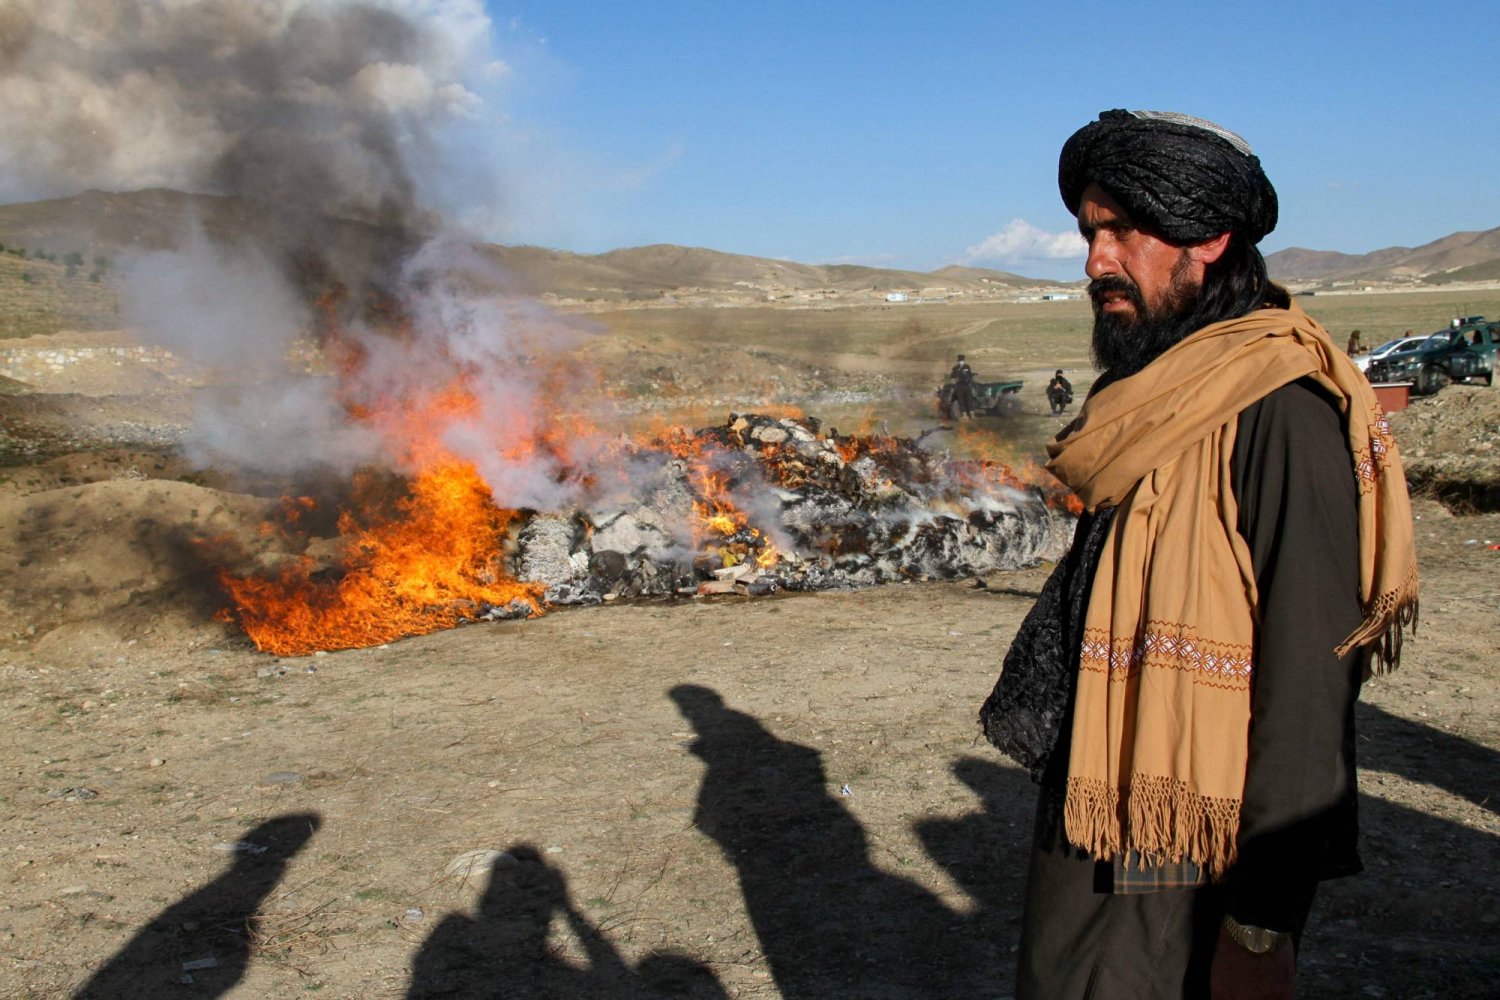 مقتل 3 من قوات الأمن بأفغانستان وتنظيم الدولة يتبنى الهجوم